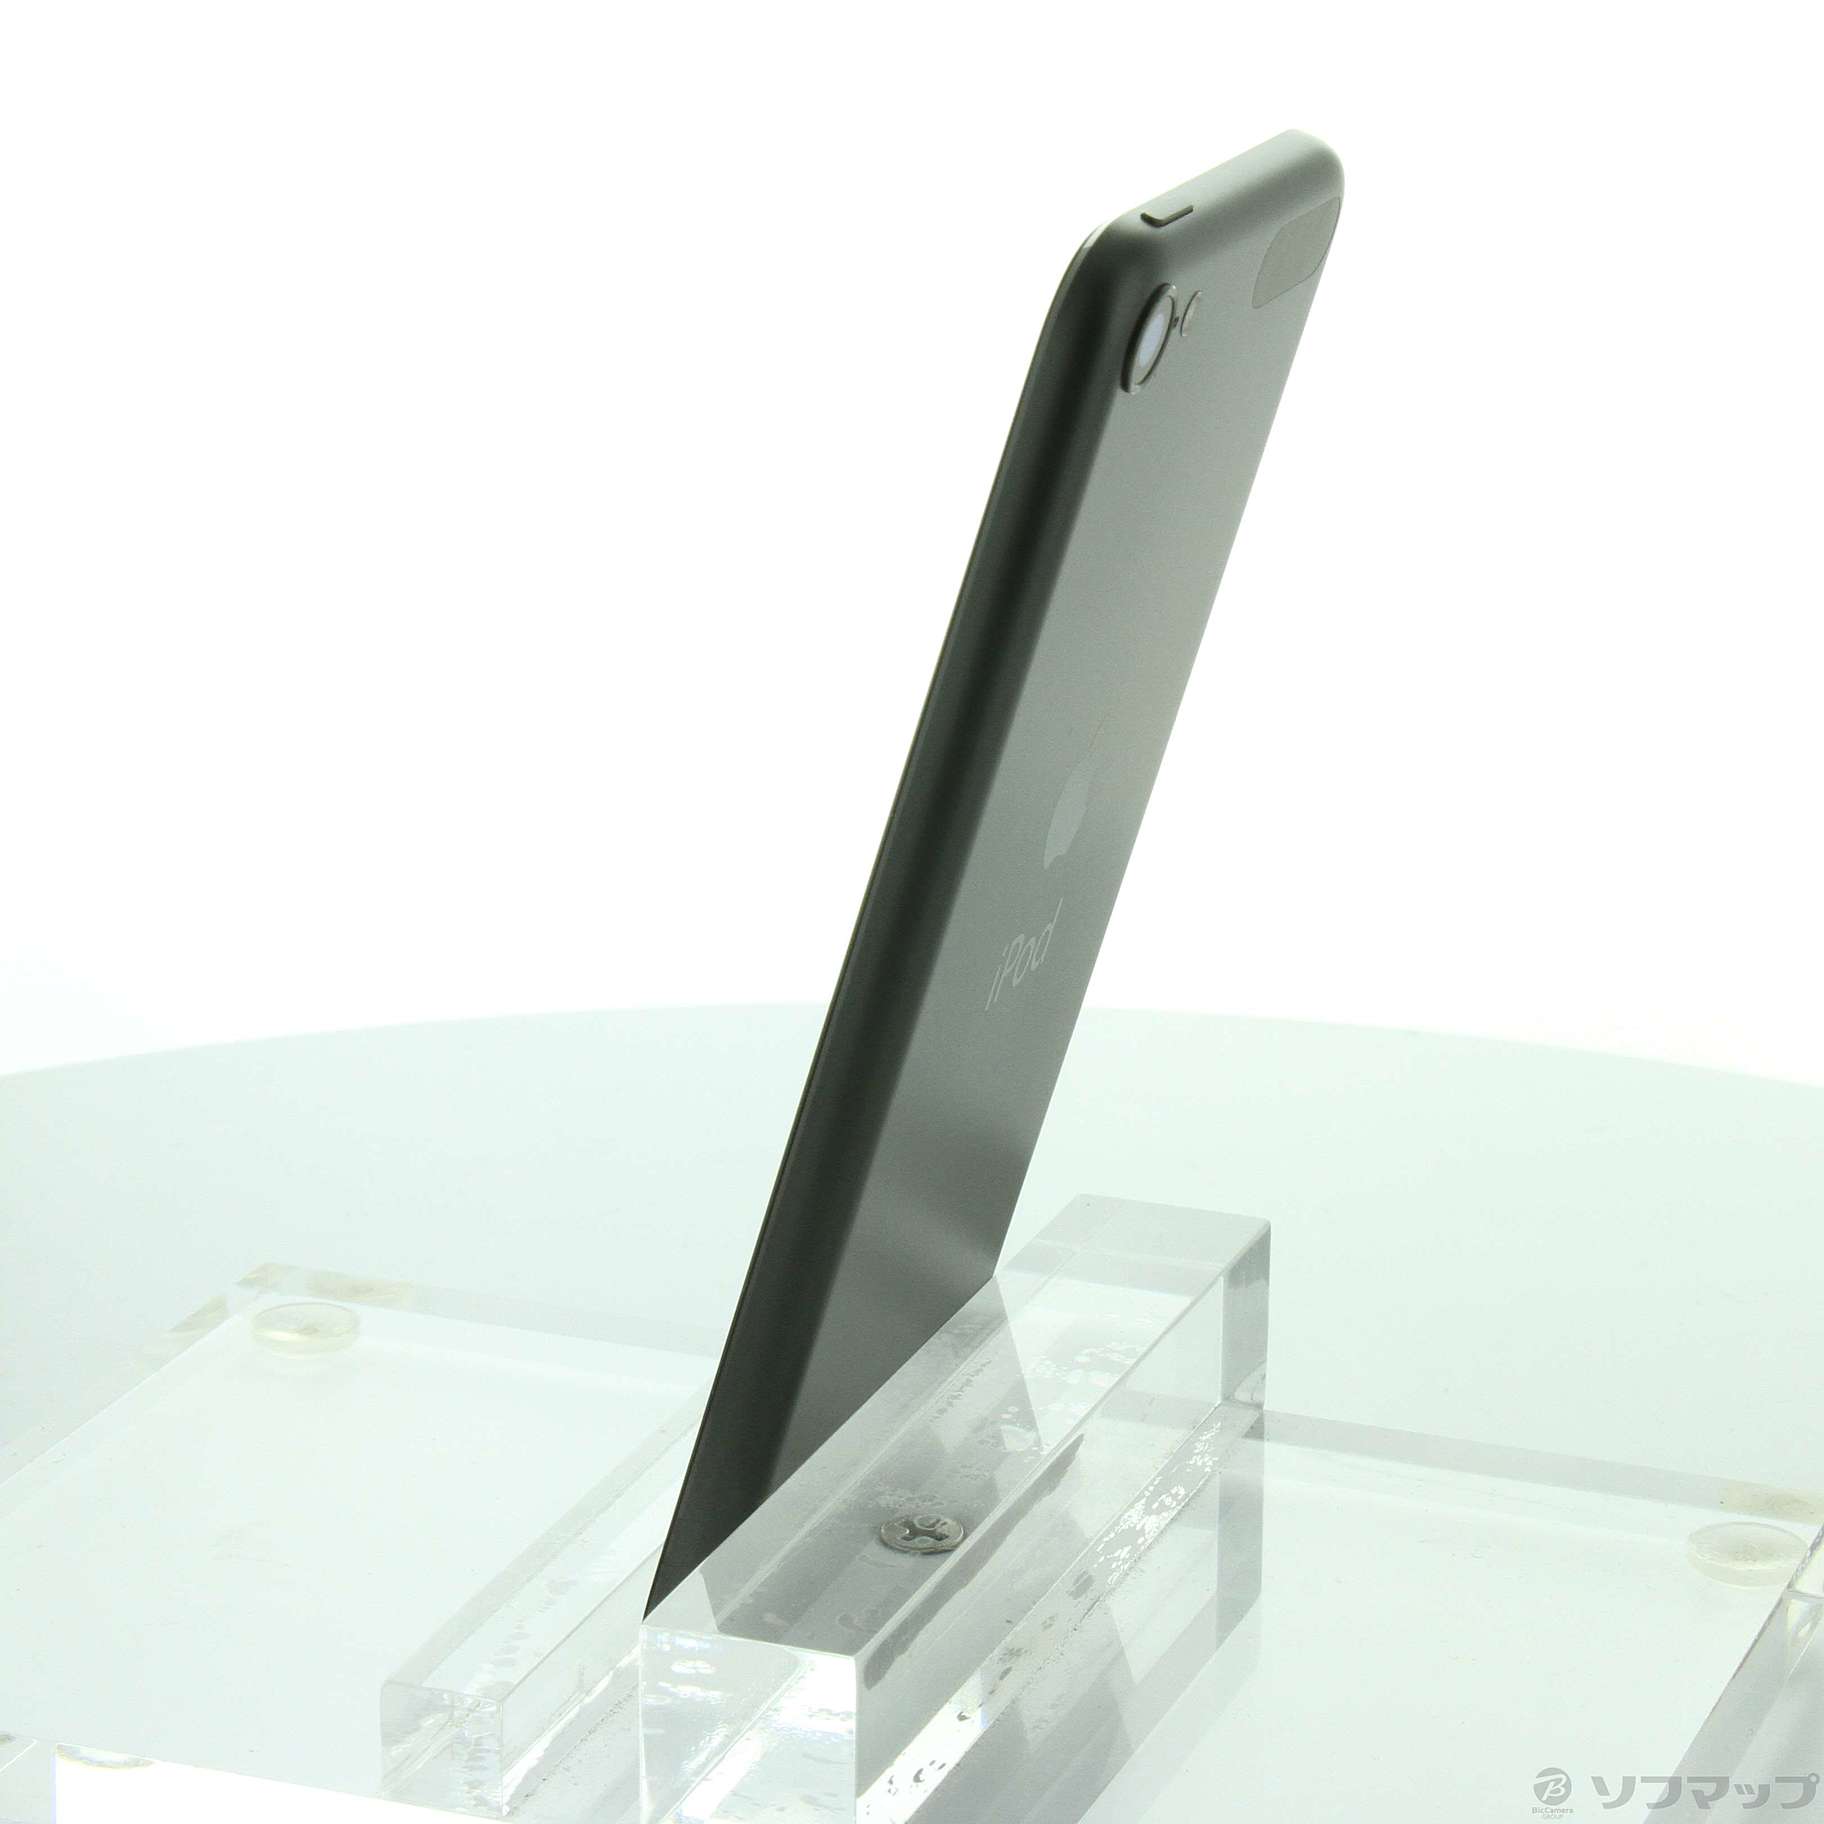 Apple】iPod touch 第6世代（128GB）スペースグレイ